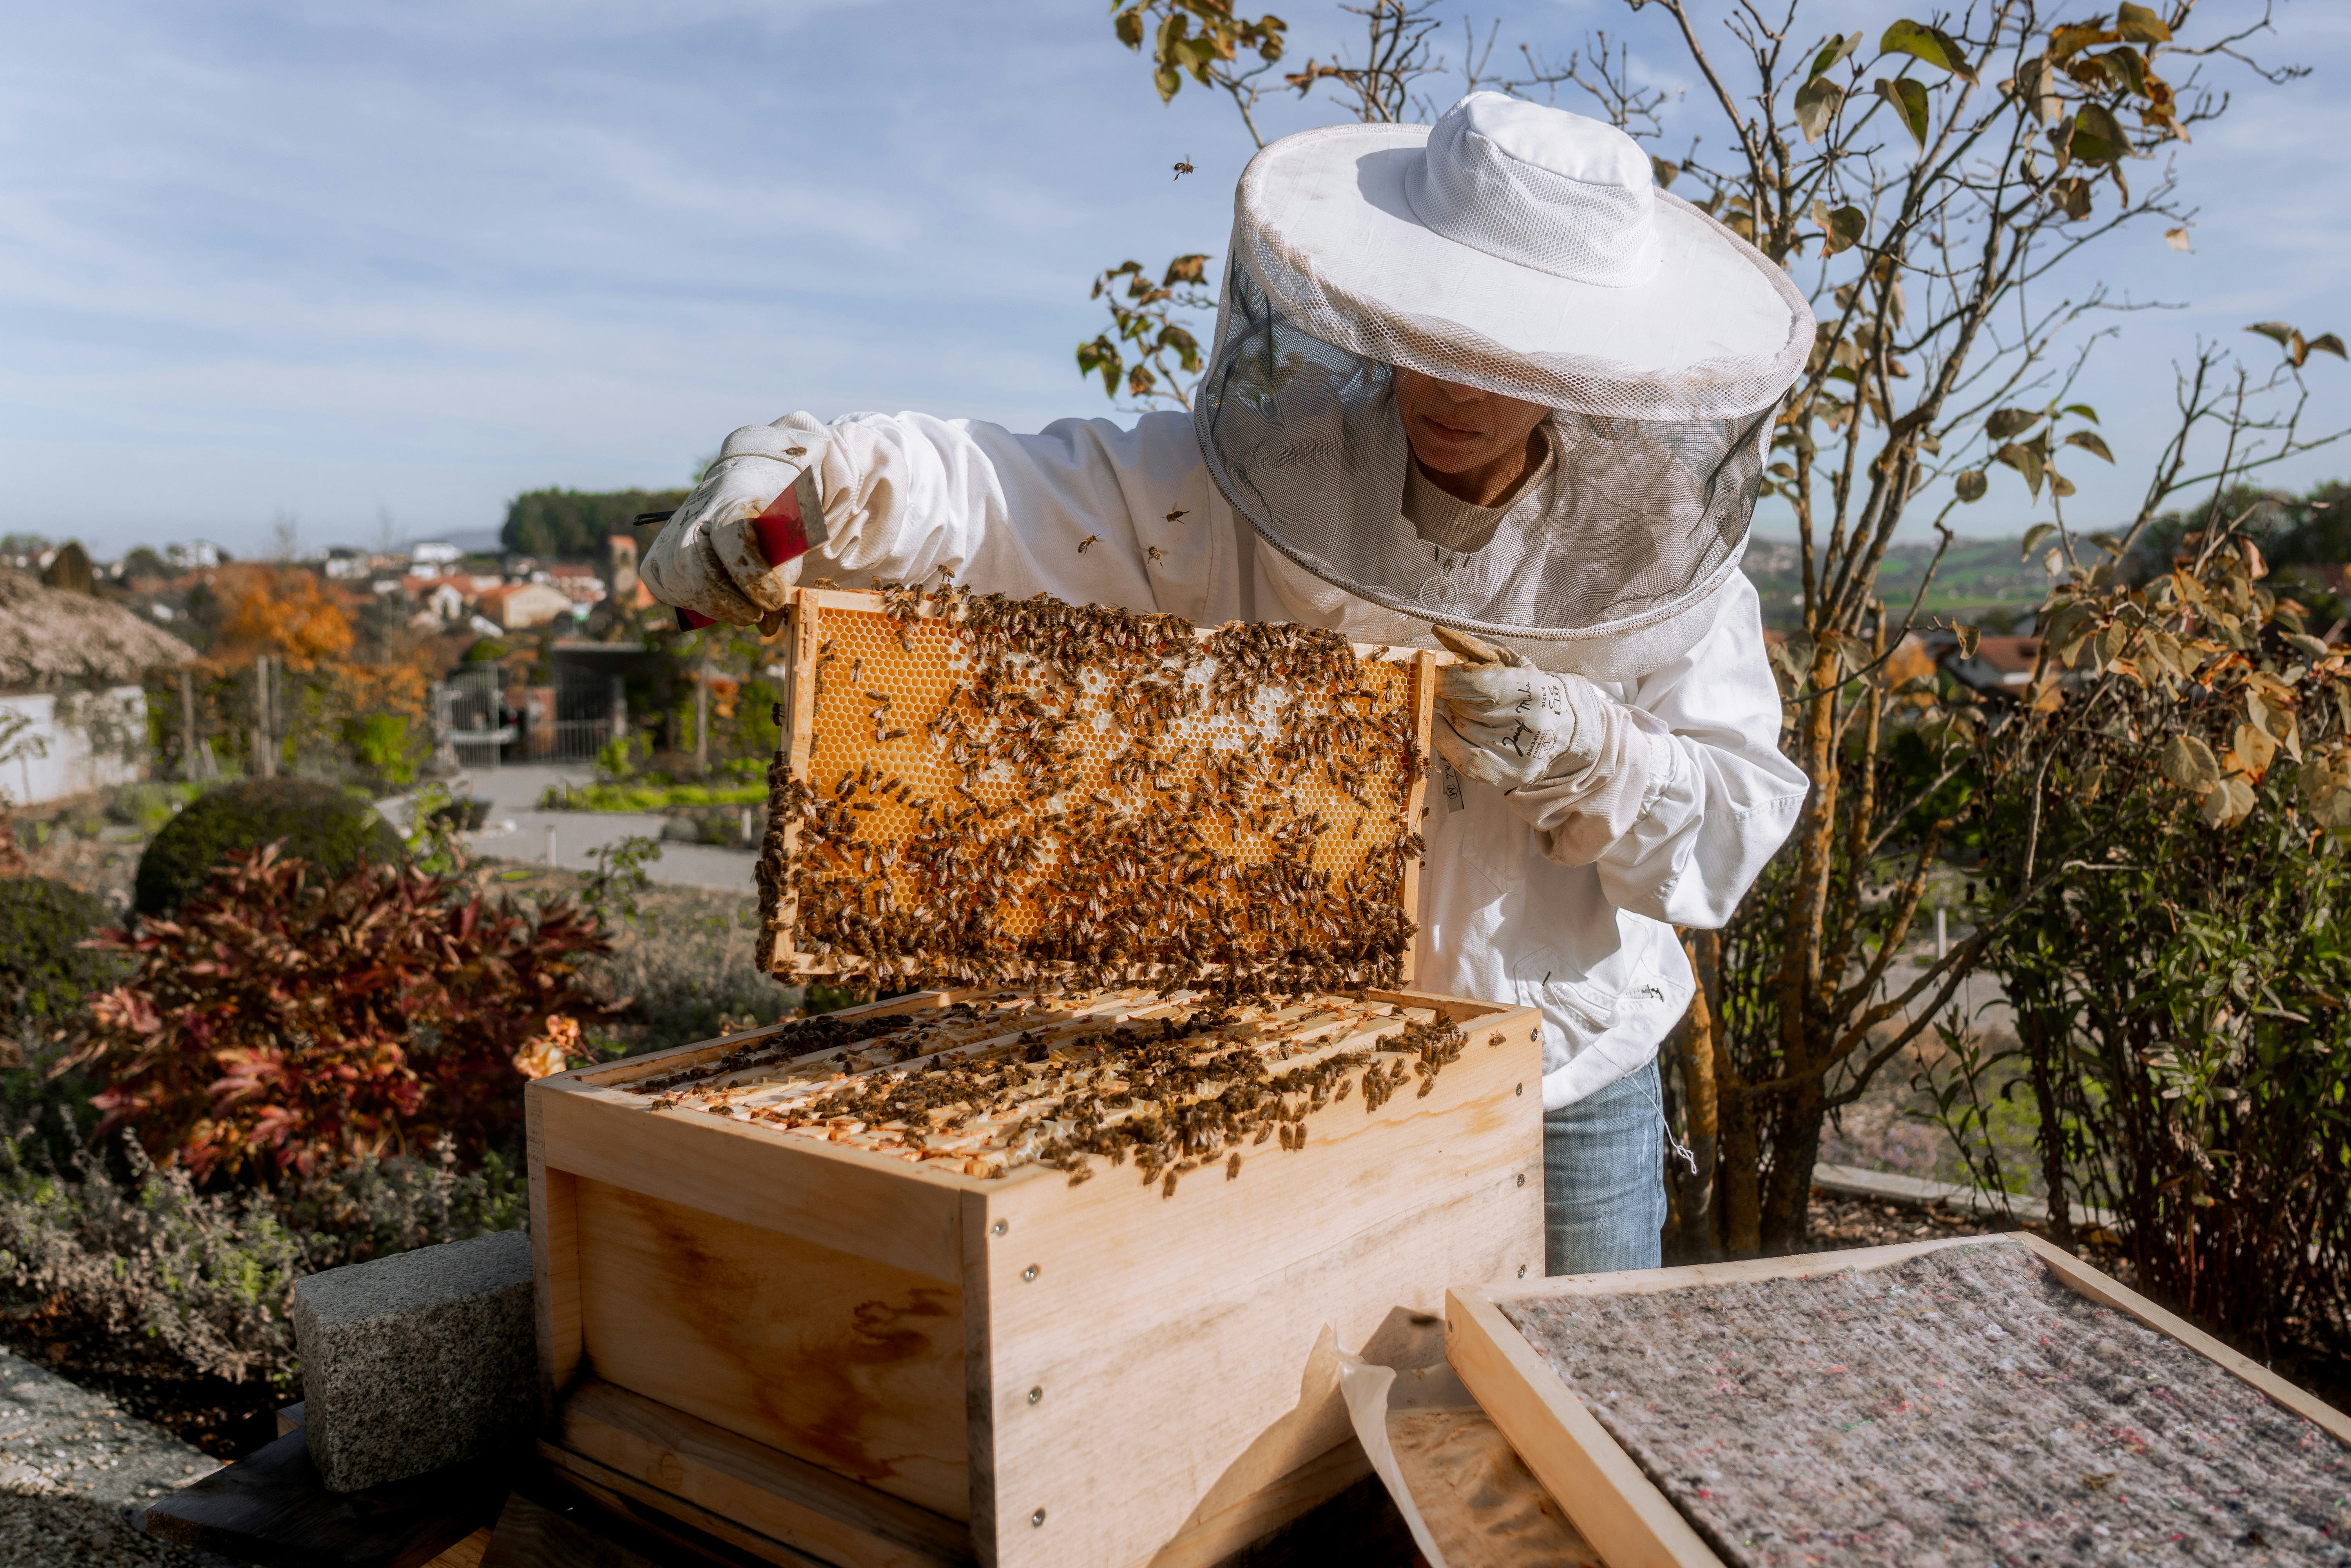 Biologin und Imkerin Julieta kümmert sich bei Rädlinger um die vier Bienenvölker